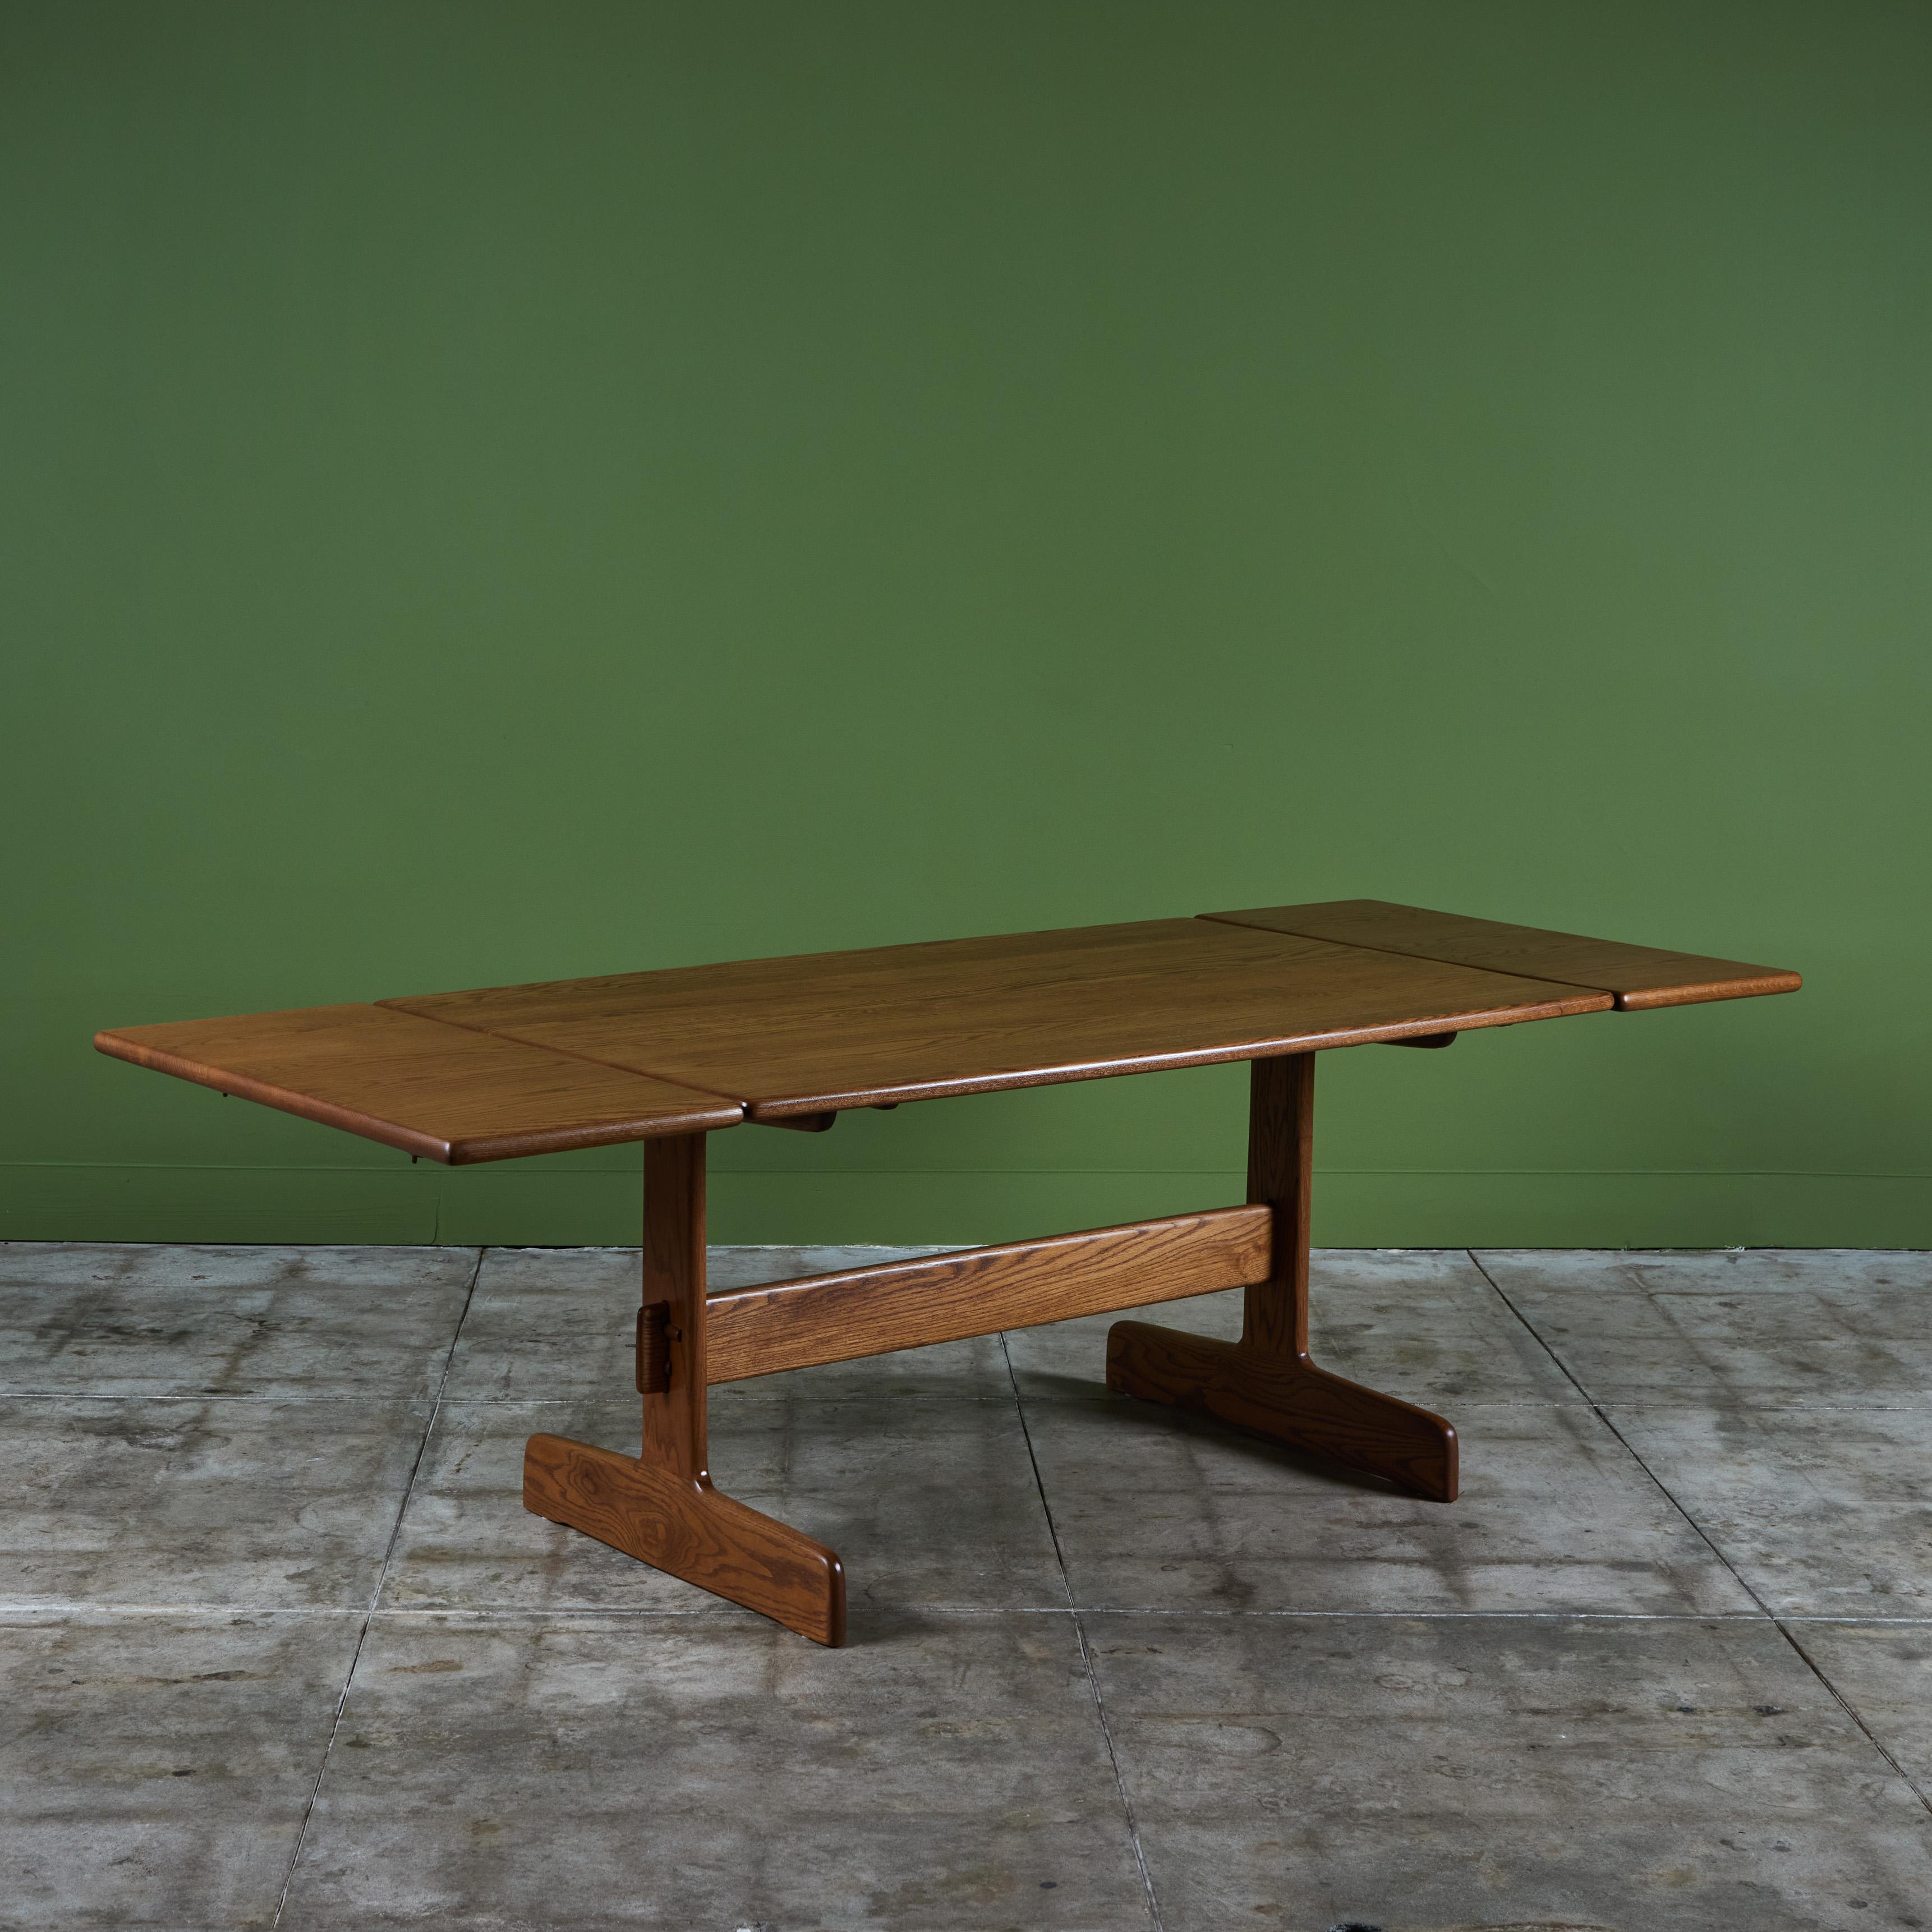 Table de salle à manger en chêne du designer américain Gerald McCabe pour Eon Furniture, c.C.1970. La table en bois massif possède deux allonges qui se fixent à chaque extrémité de la table. La table est superbement assortie aux bancs à tréteaux